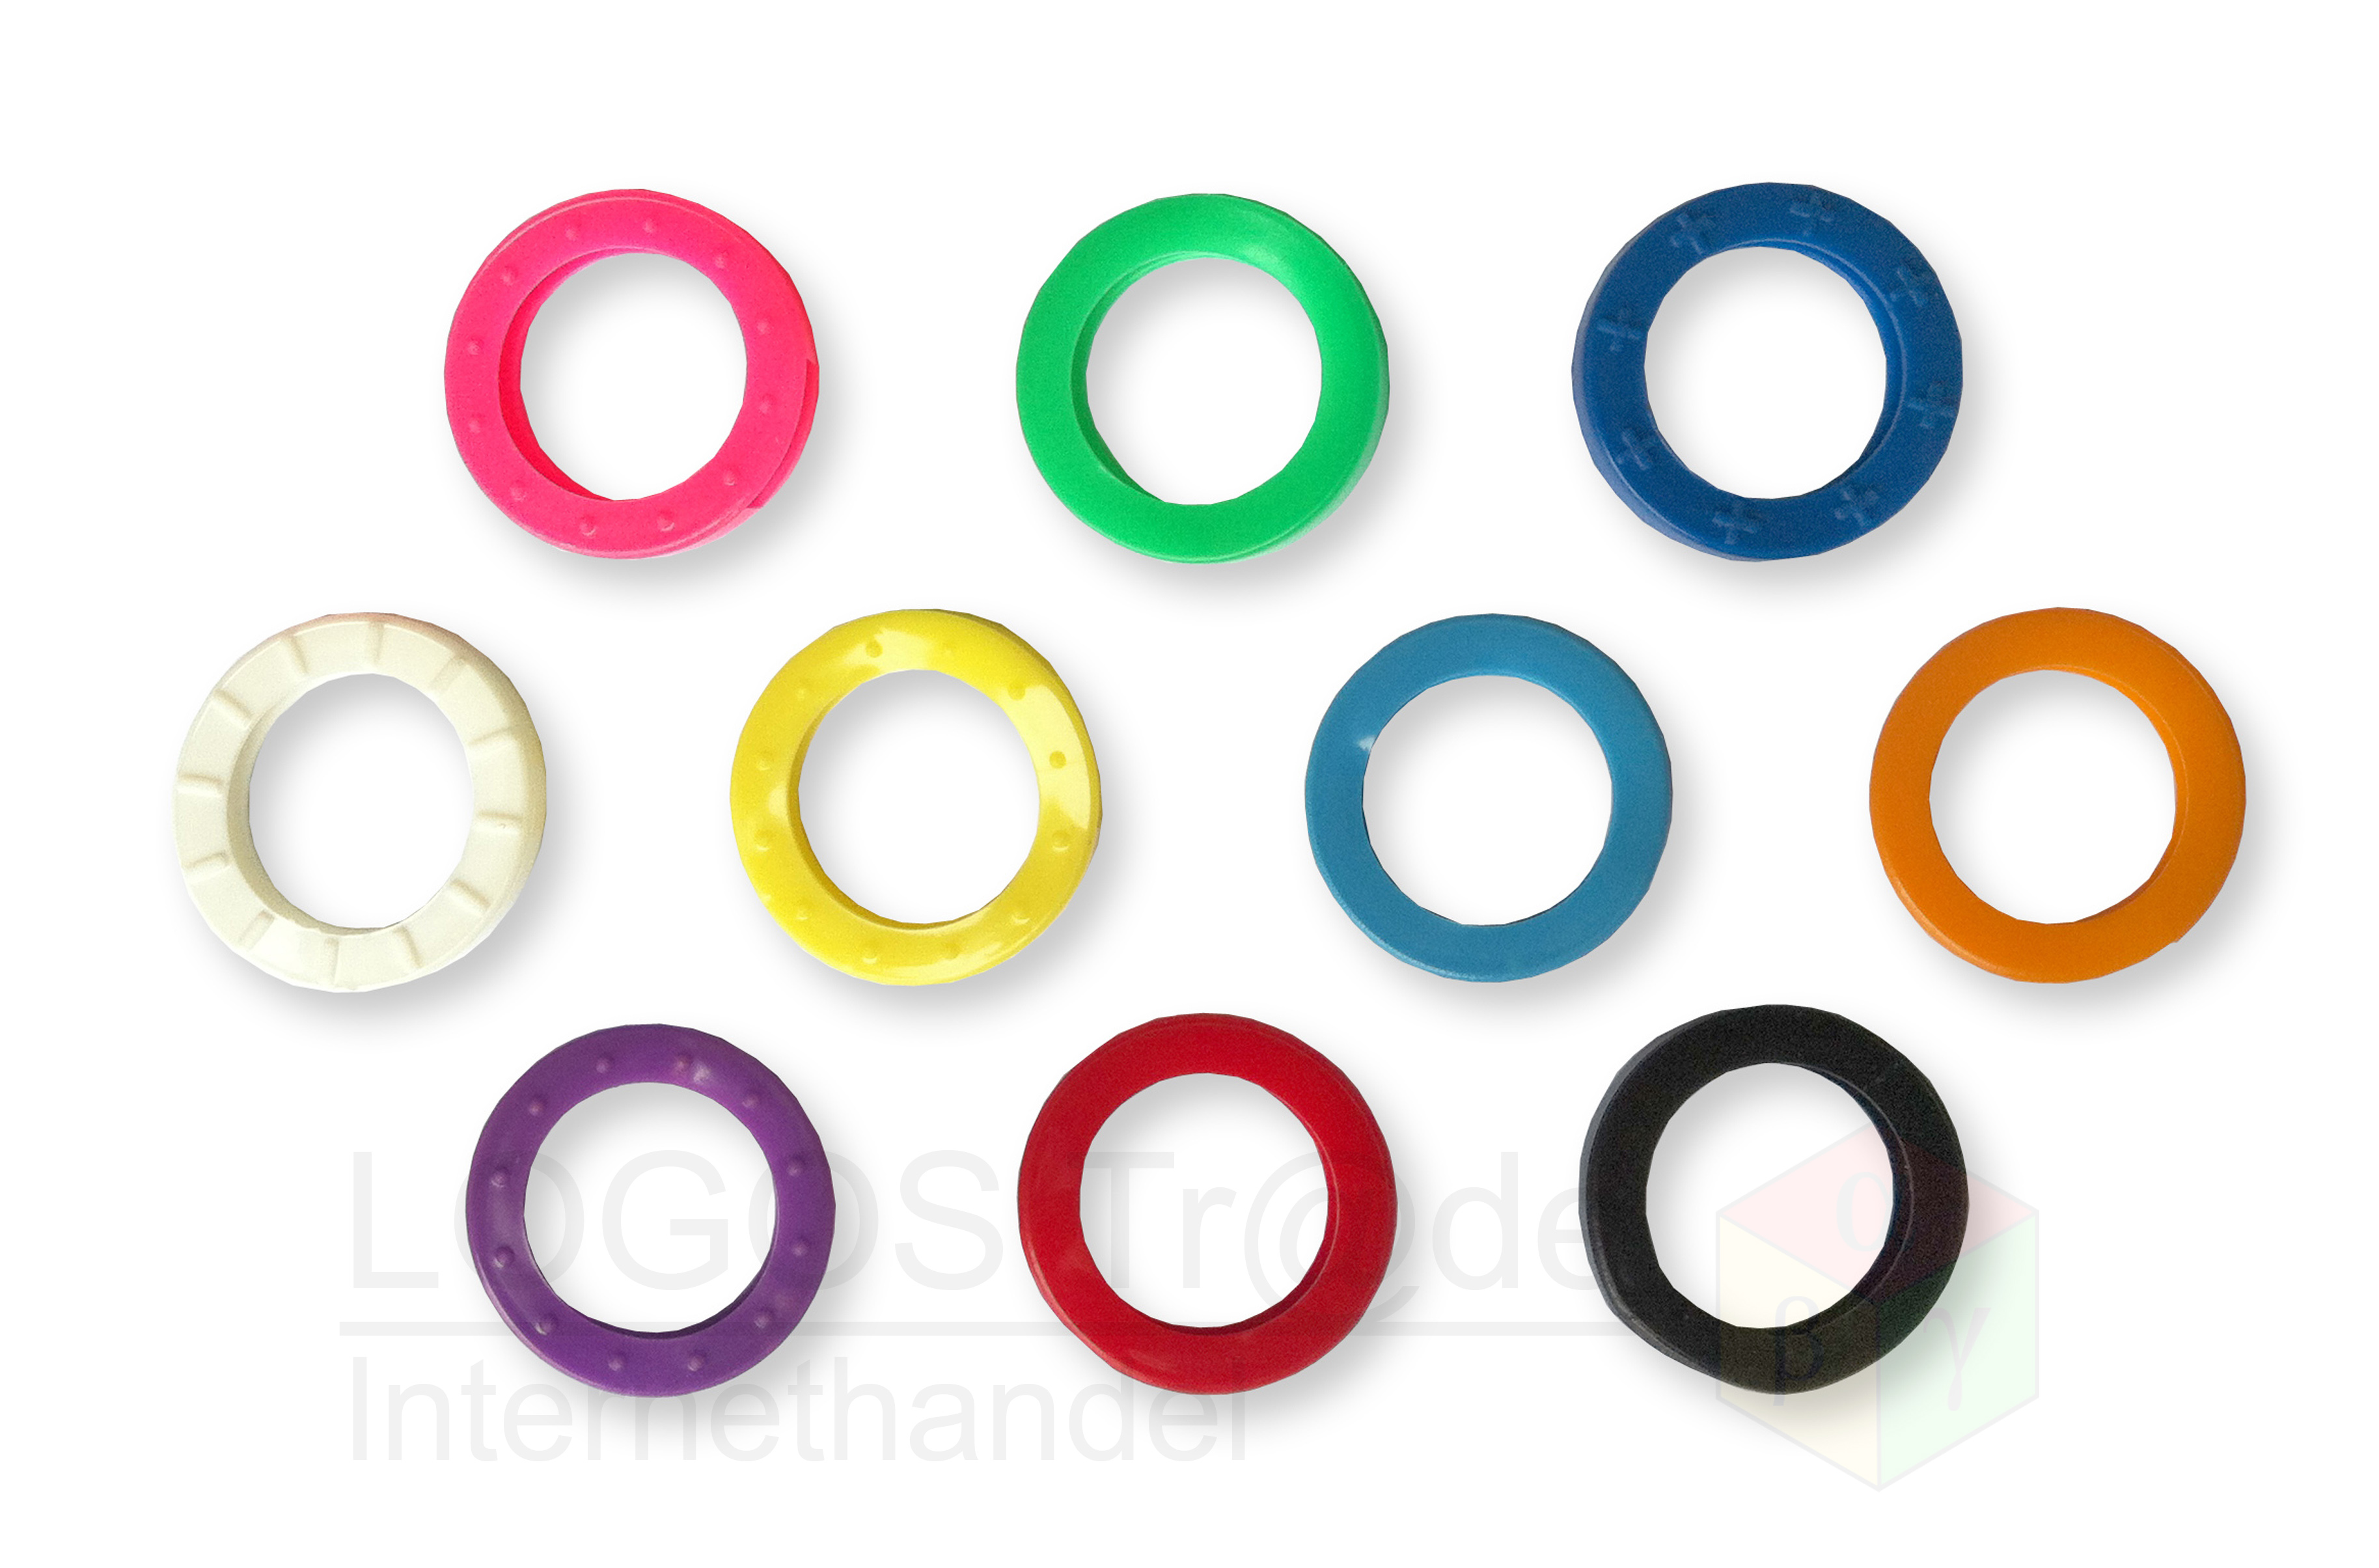 10 Schlüsselkennringe (rund), Ø ca. 24mm: 1 x rosa, 1 x orange, 1x violett, 1 x rot, 1 x hellblau, 1 x blau, 1 x weiß, 1 x schwarz, 1 x gelb, 1 x grün